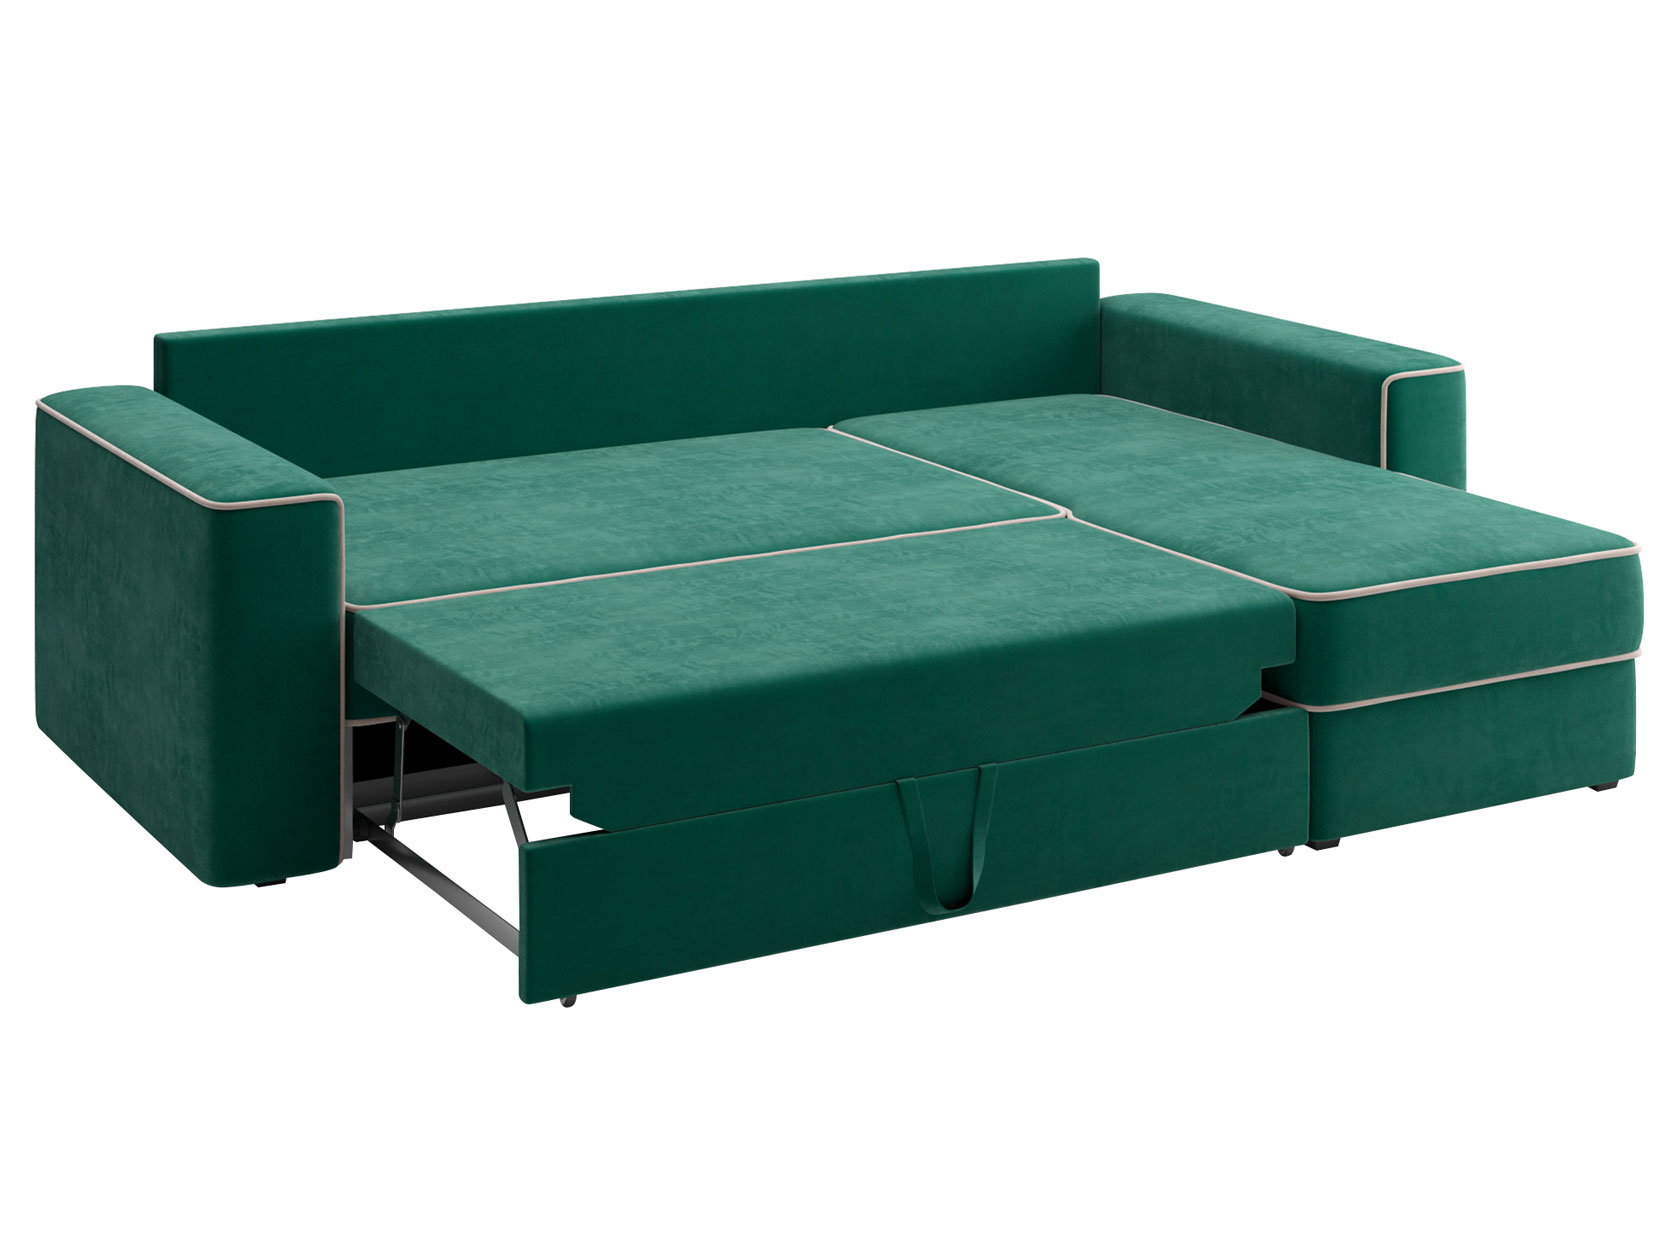 Угловой диван-кровать Астон